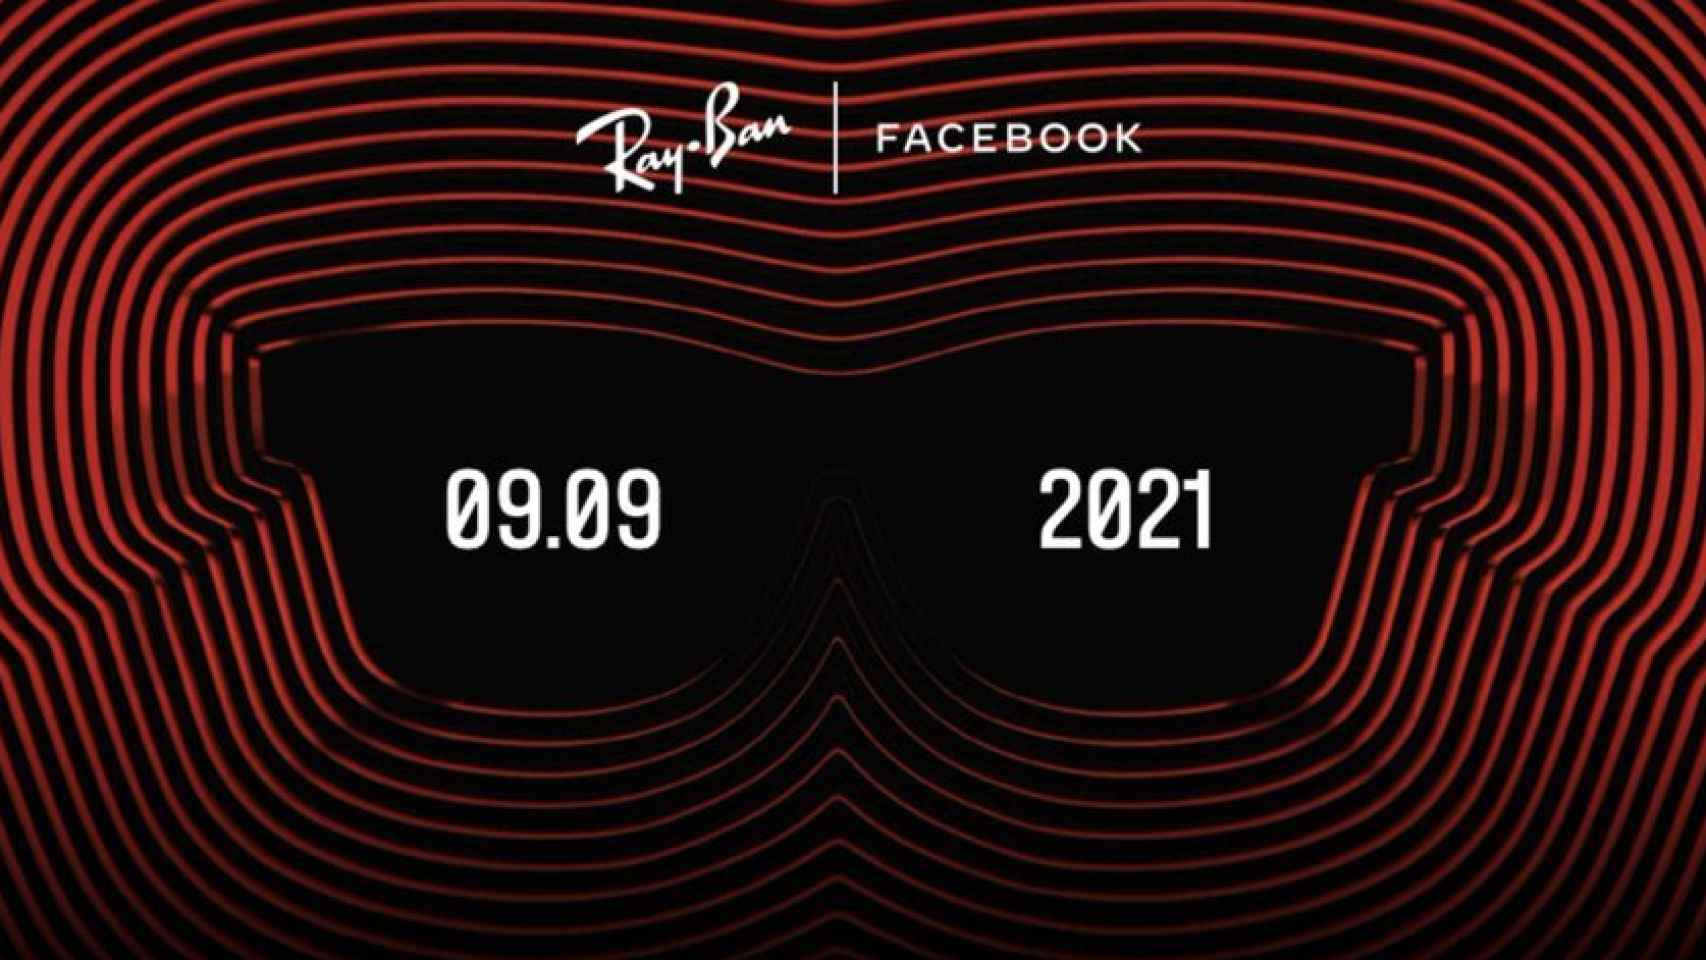 Presentación gafas de Facebook y Ray Ban